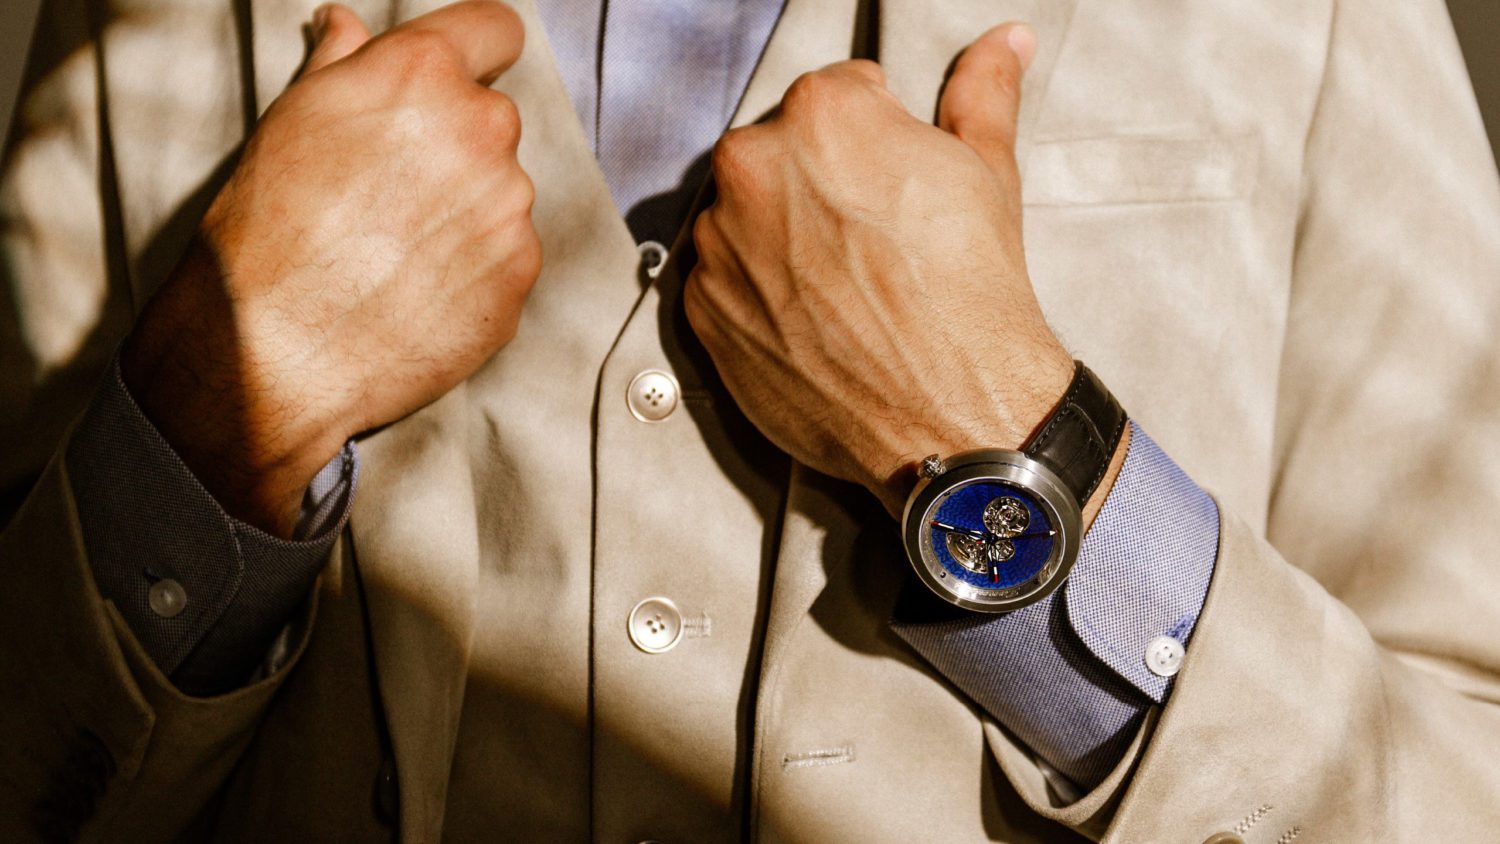 Zannetti Discobolo “Blue Edition”  dial with blu flinqué enamel.
Self-winding Swiss movement customized for Zannetti